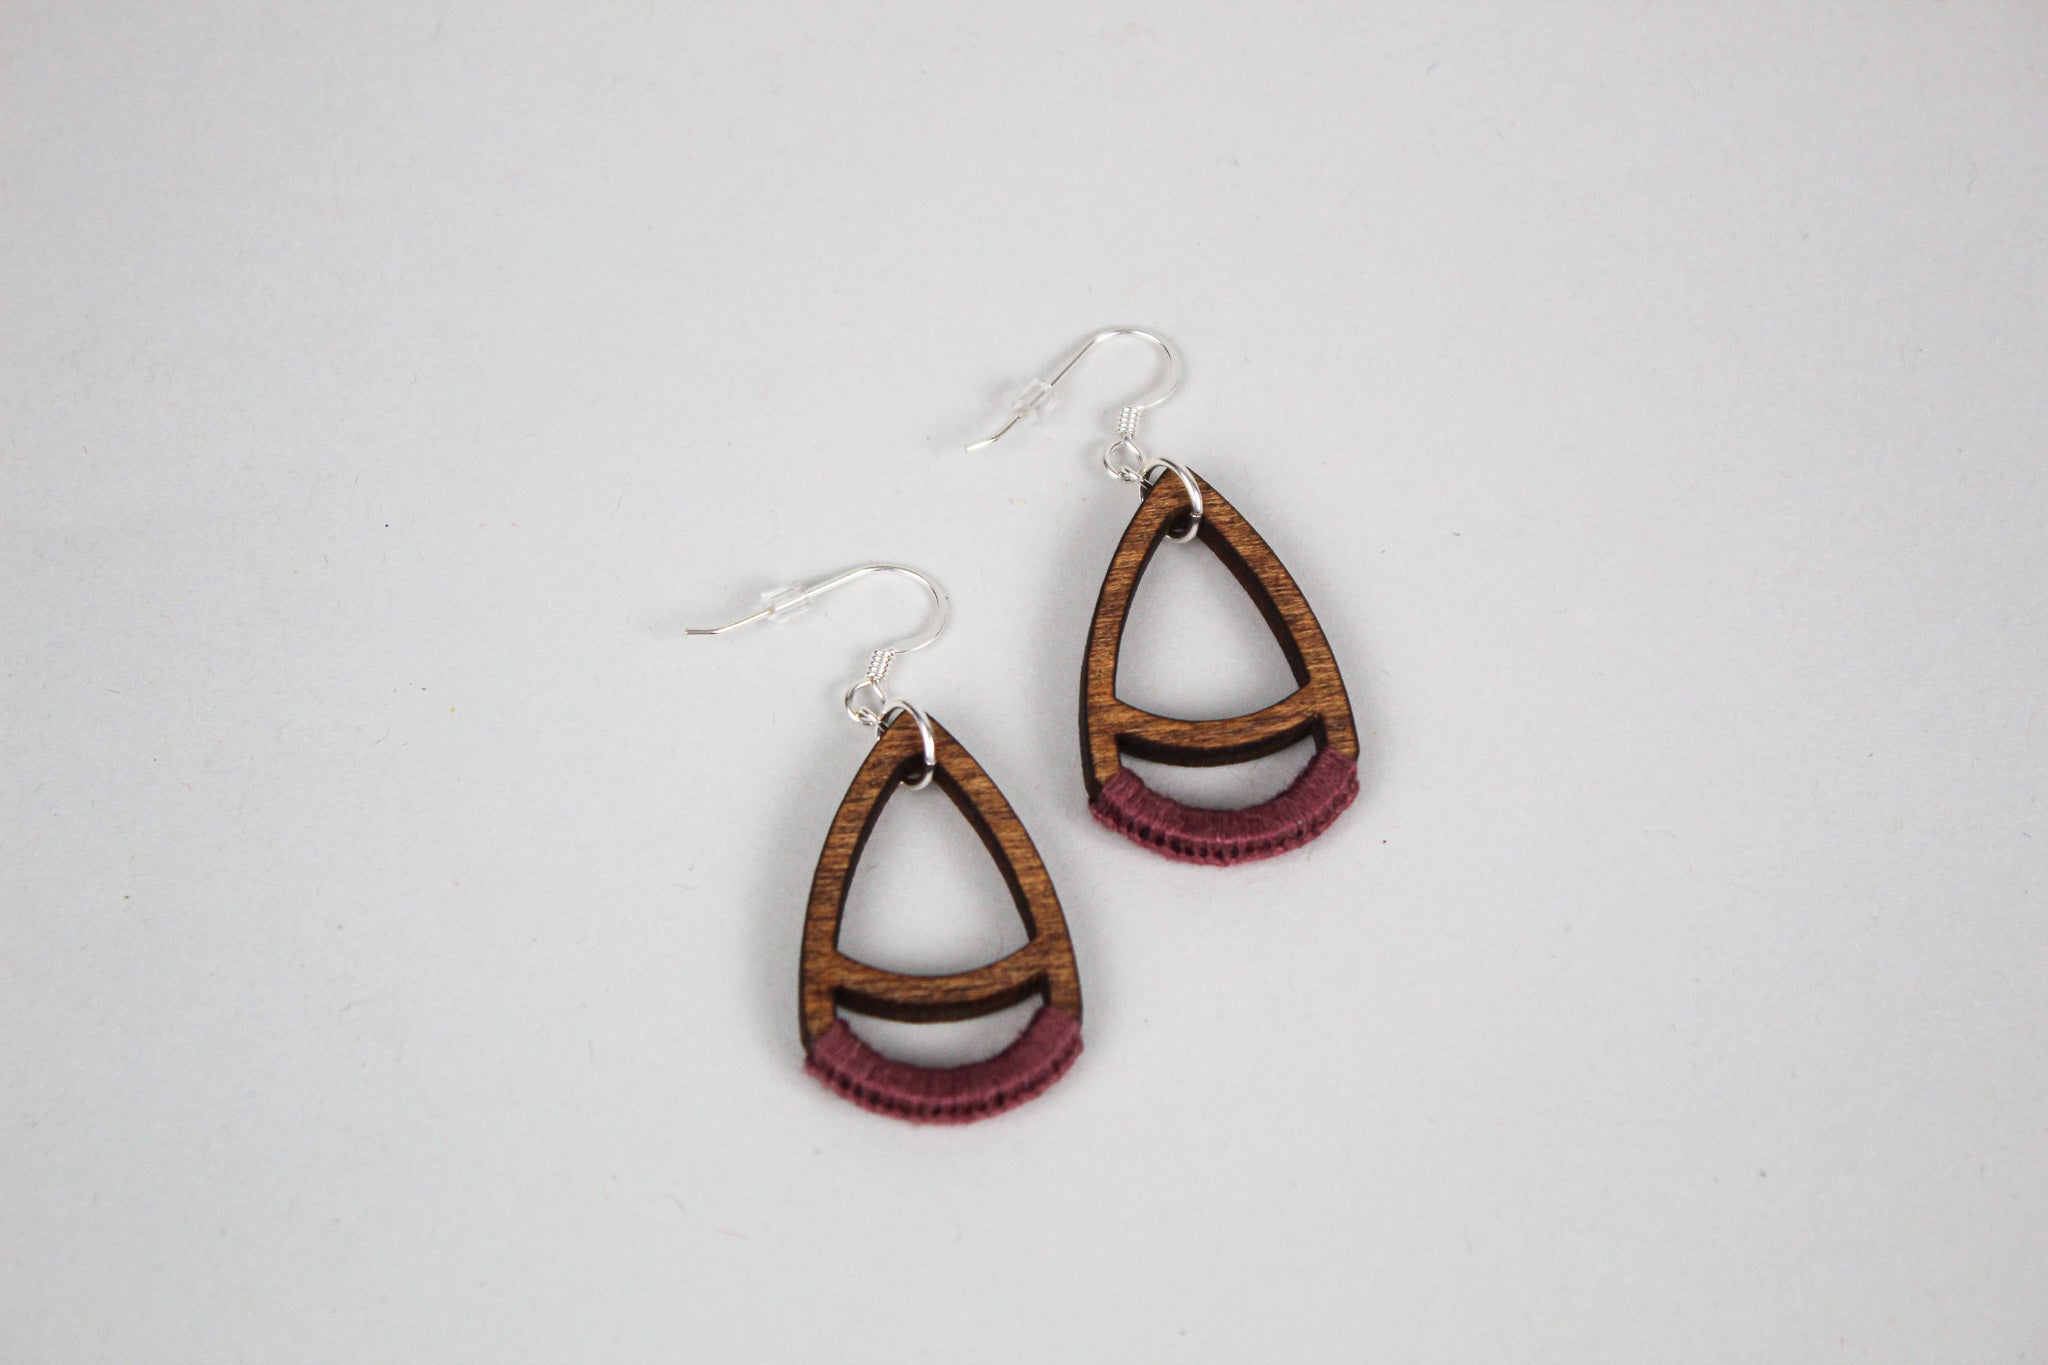 Taycee Earrings